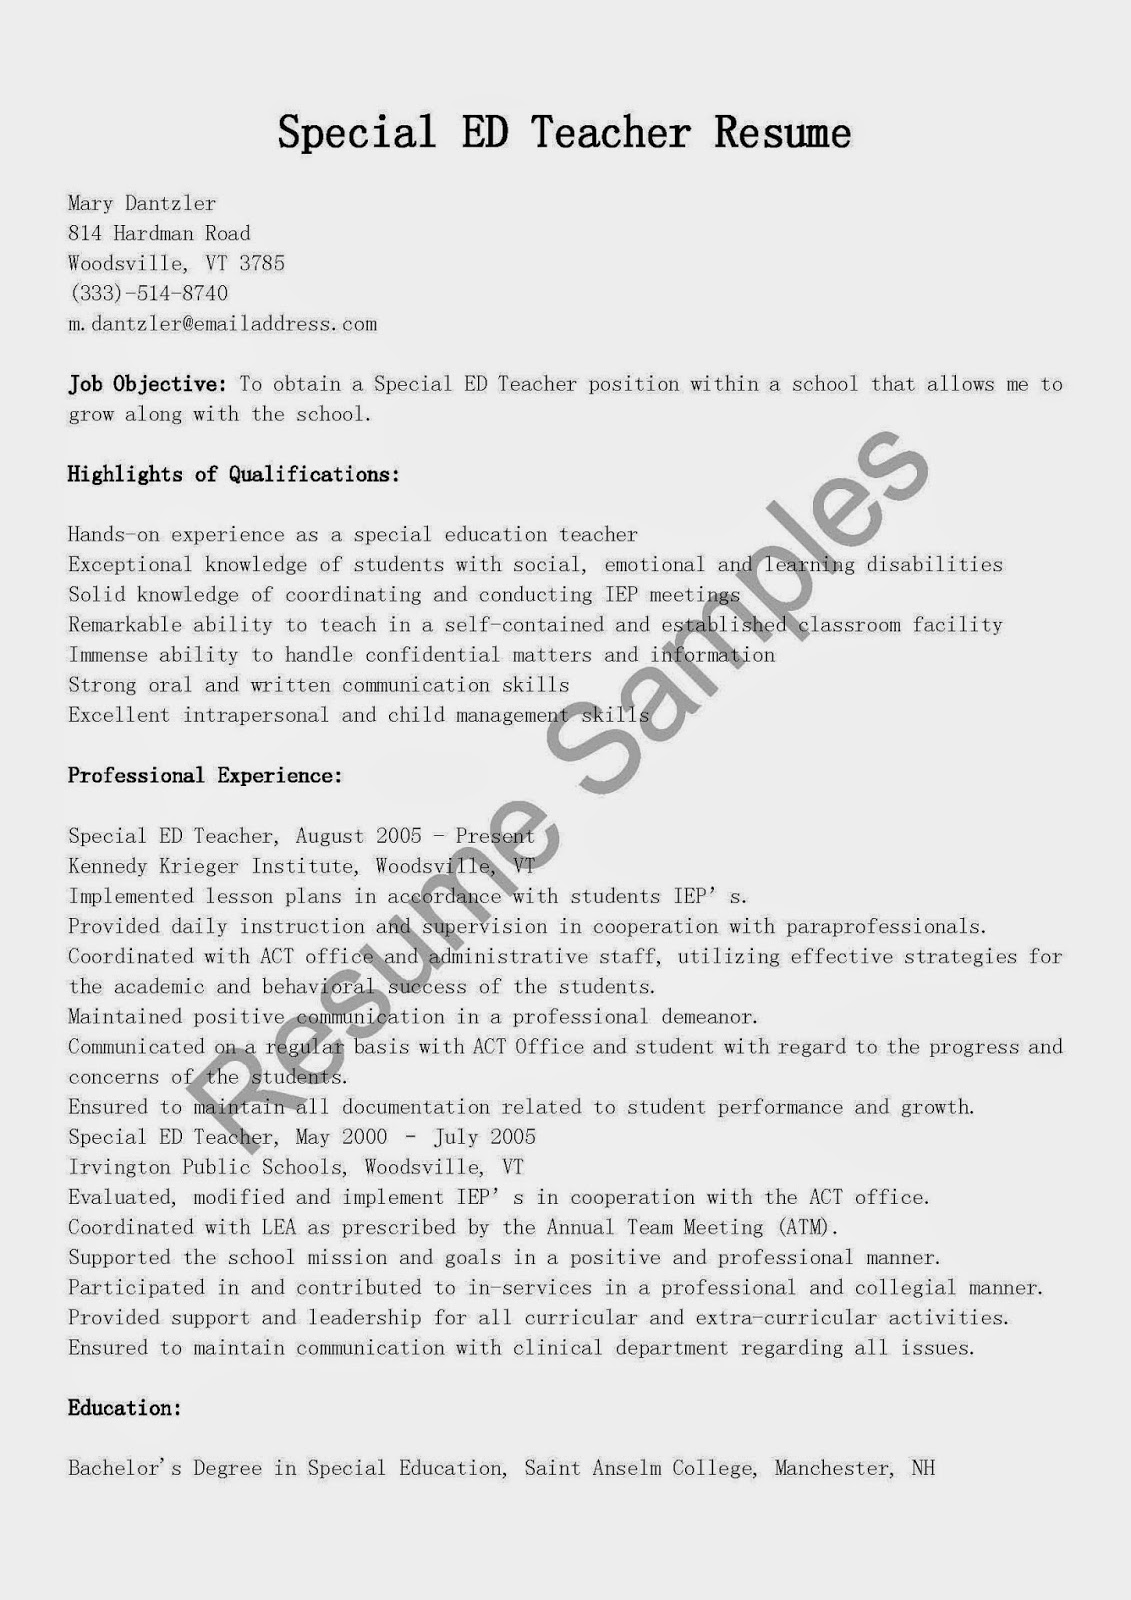 Sample resume for special education teacher